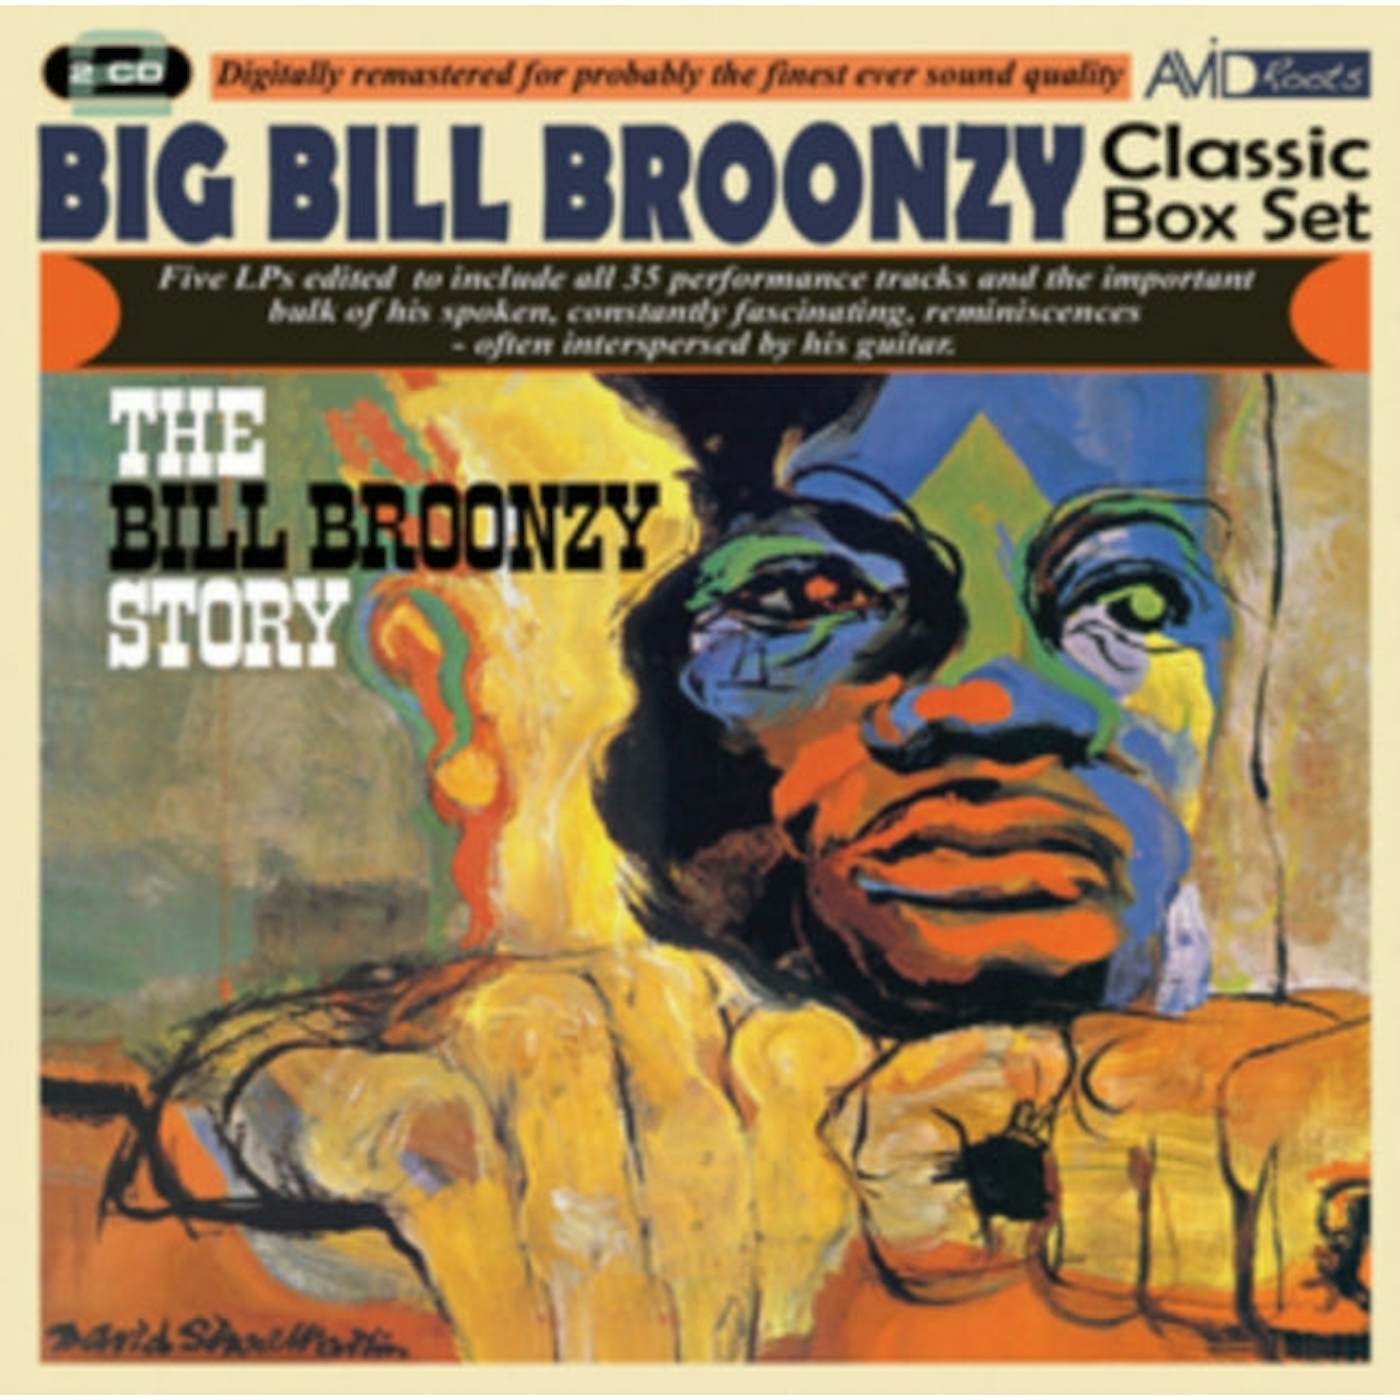 Big Bill Broonzy CD - Classic Box Set